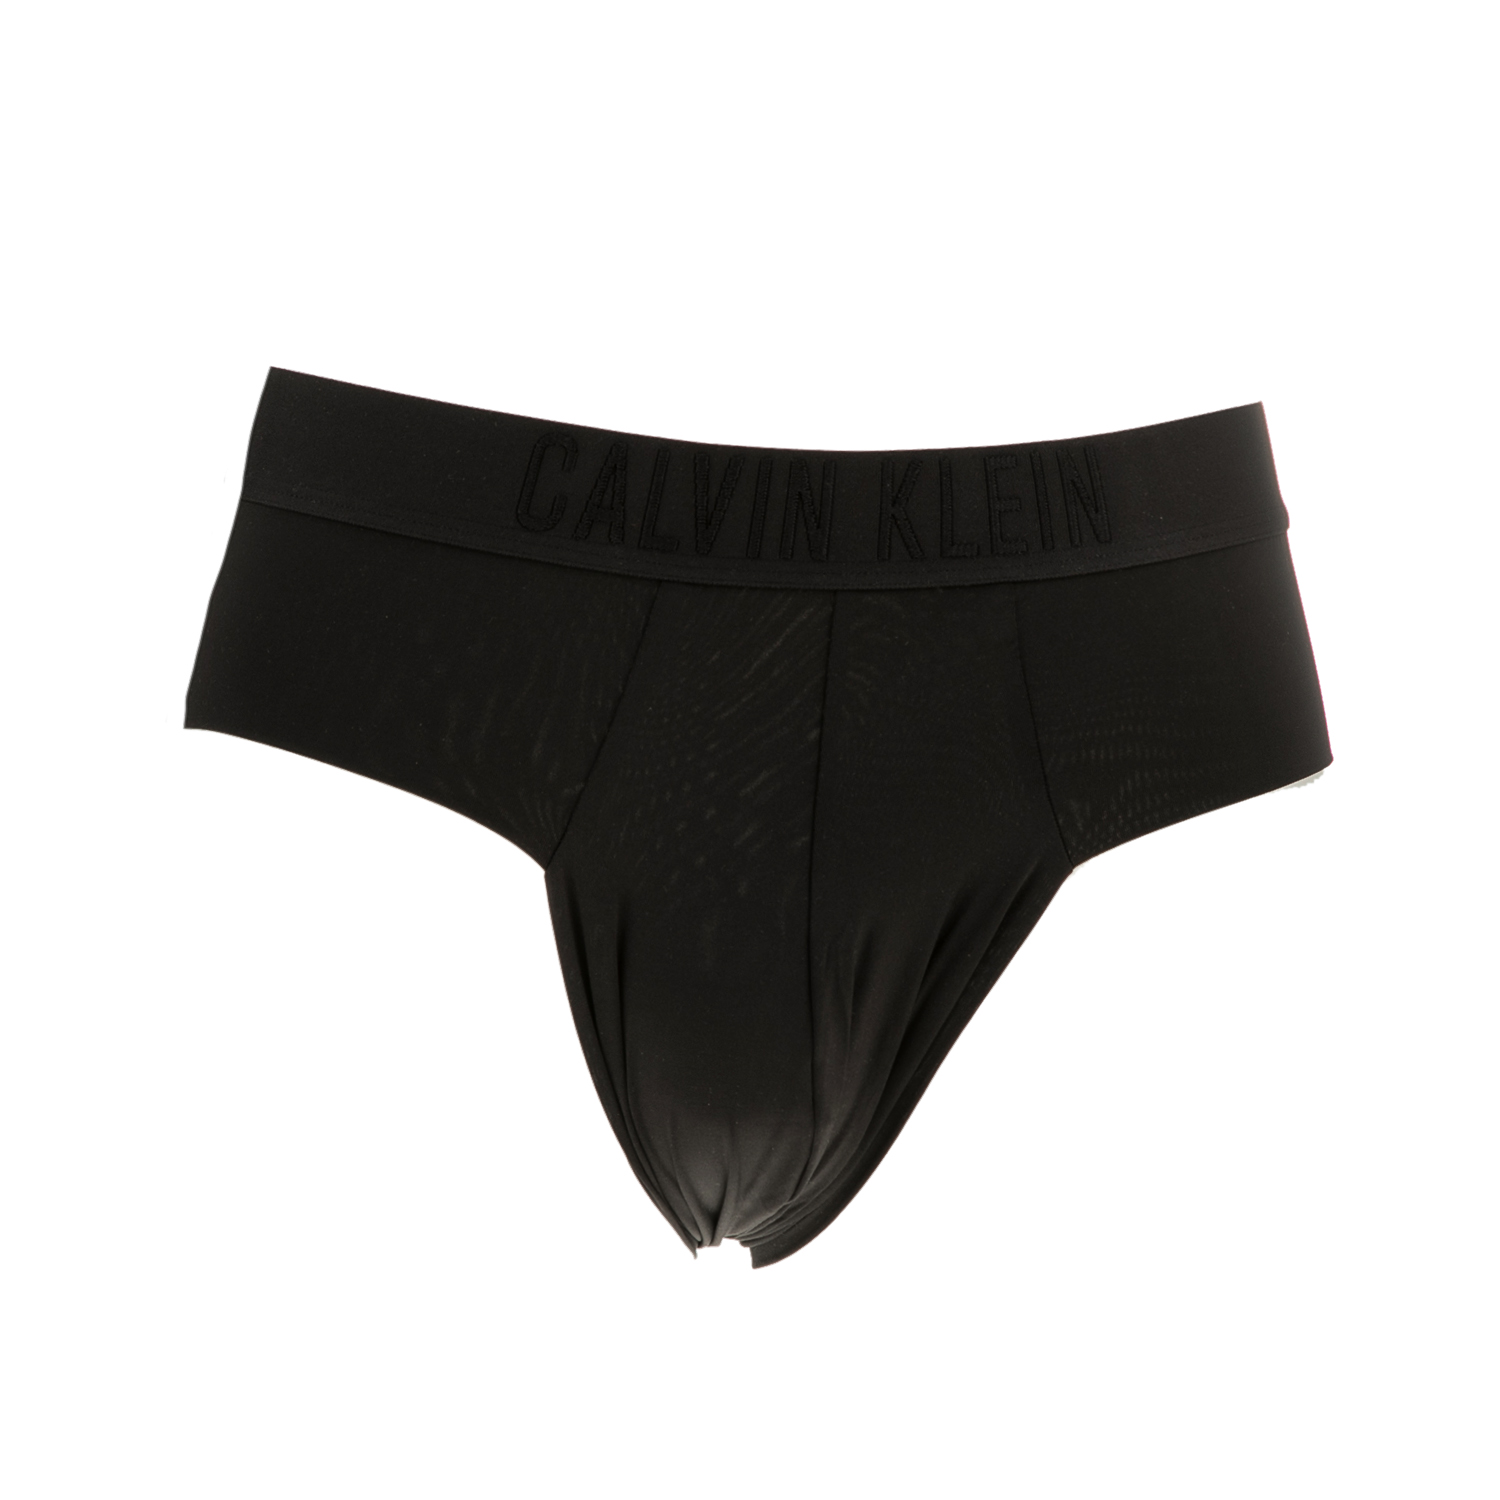 Ανδρικά/Ρούχα/Εσώρουχα/Σλίπ CK UNDERWEAR - Ανδρικό εσώρουχο σλιπ CK Underwear μαύρο